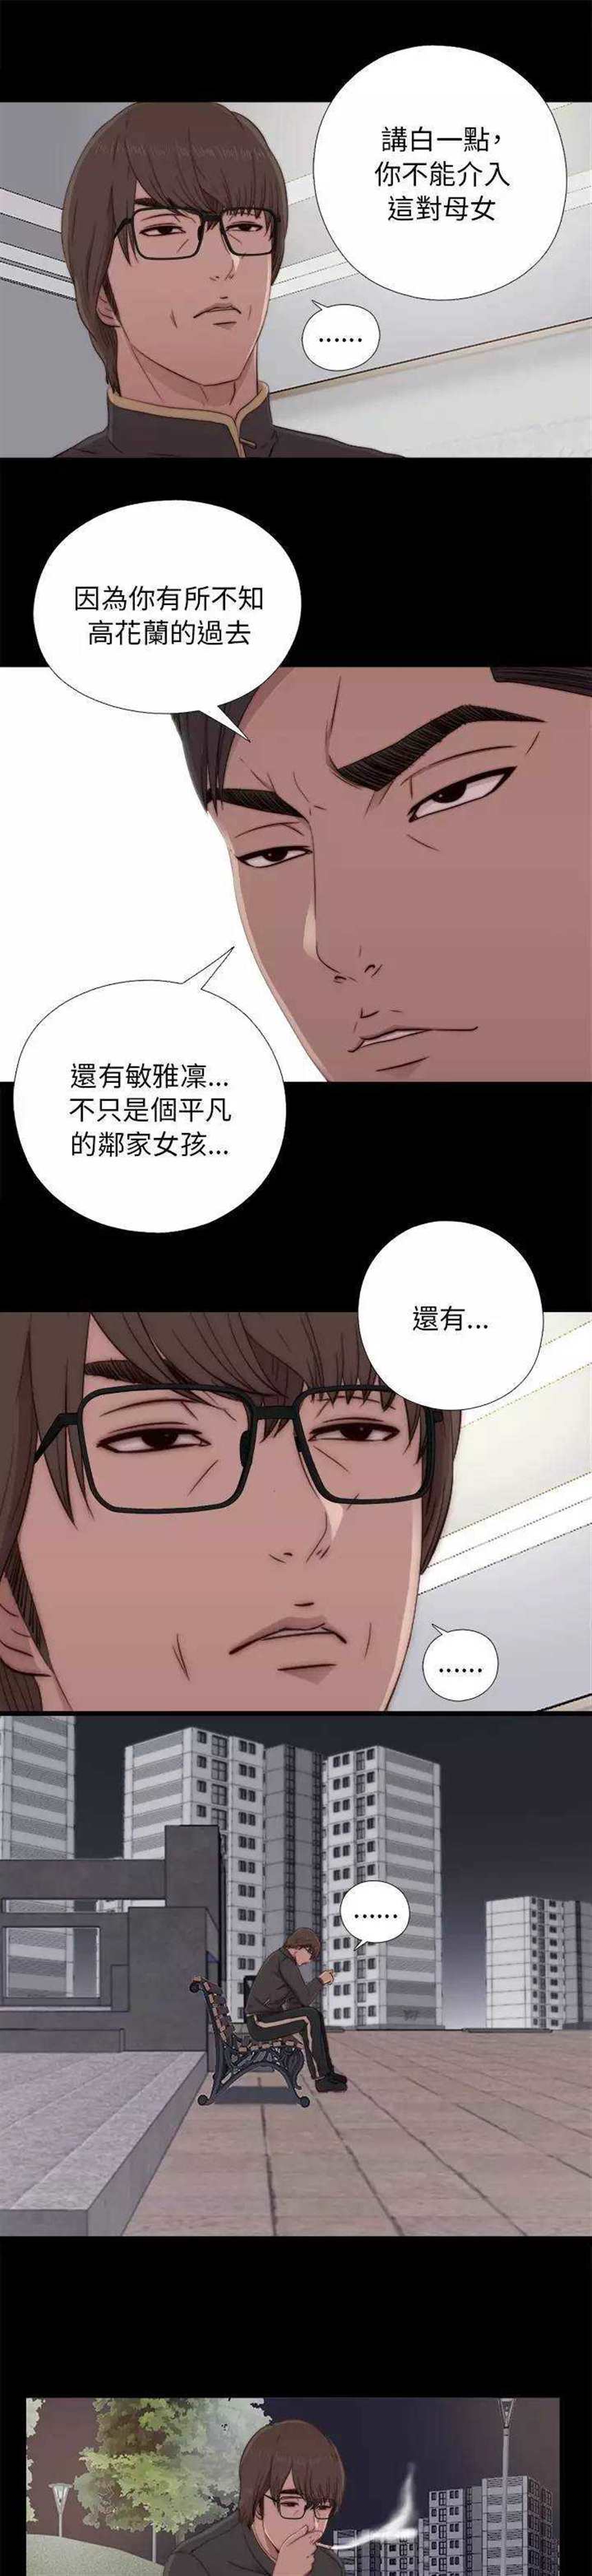 韩国漫画《邻家少女》第46话:在等谁?(点击浏览下一张趣图)